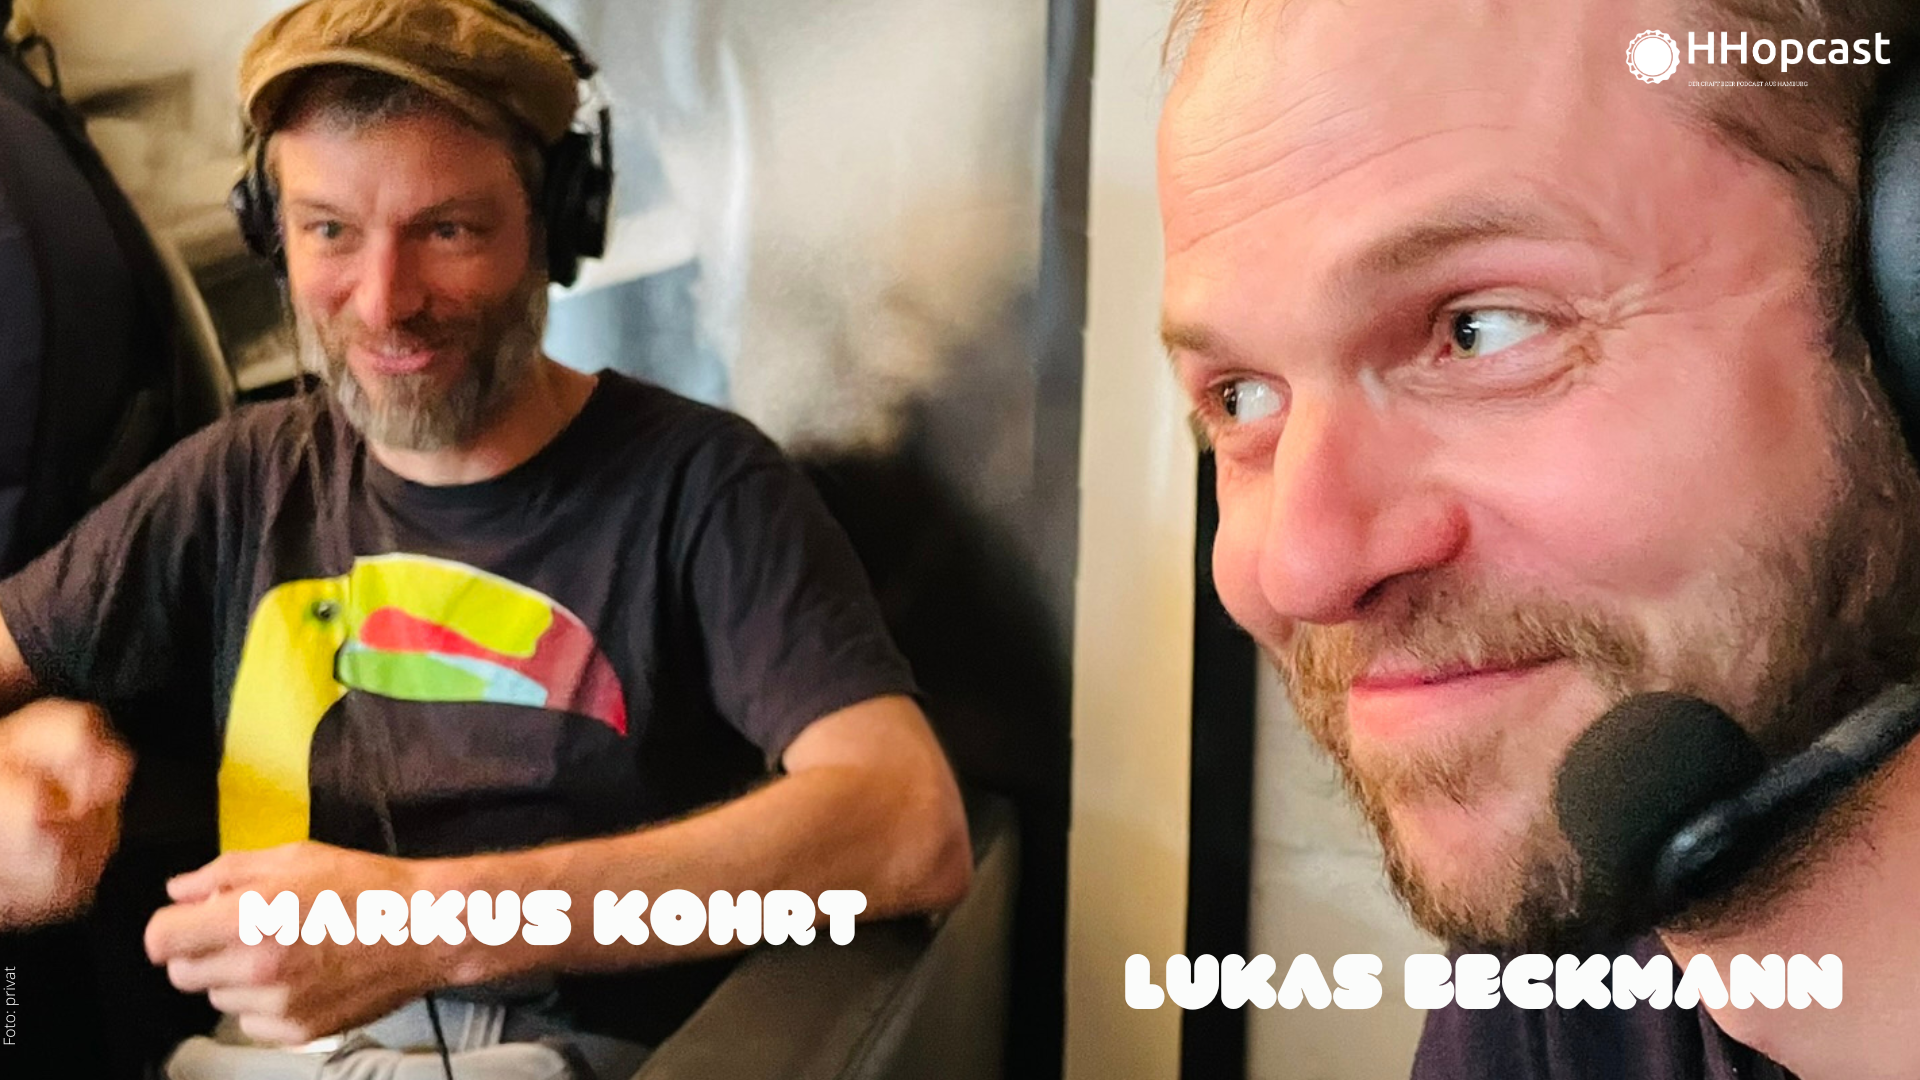 Lukas Beckmann und Markus Kohrt im HHopcast Studio mit Kopfhörer